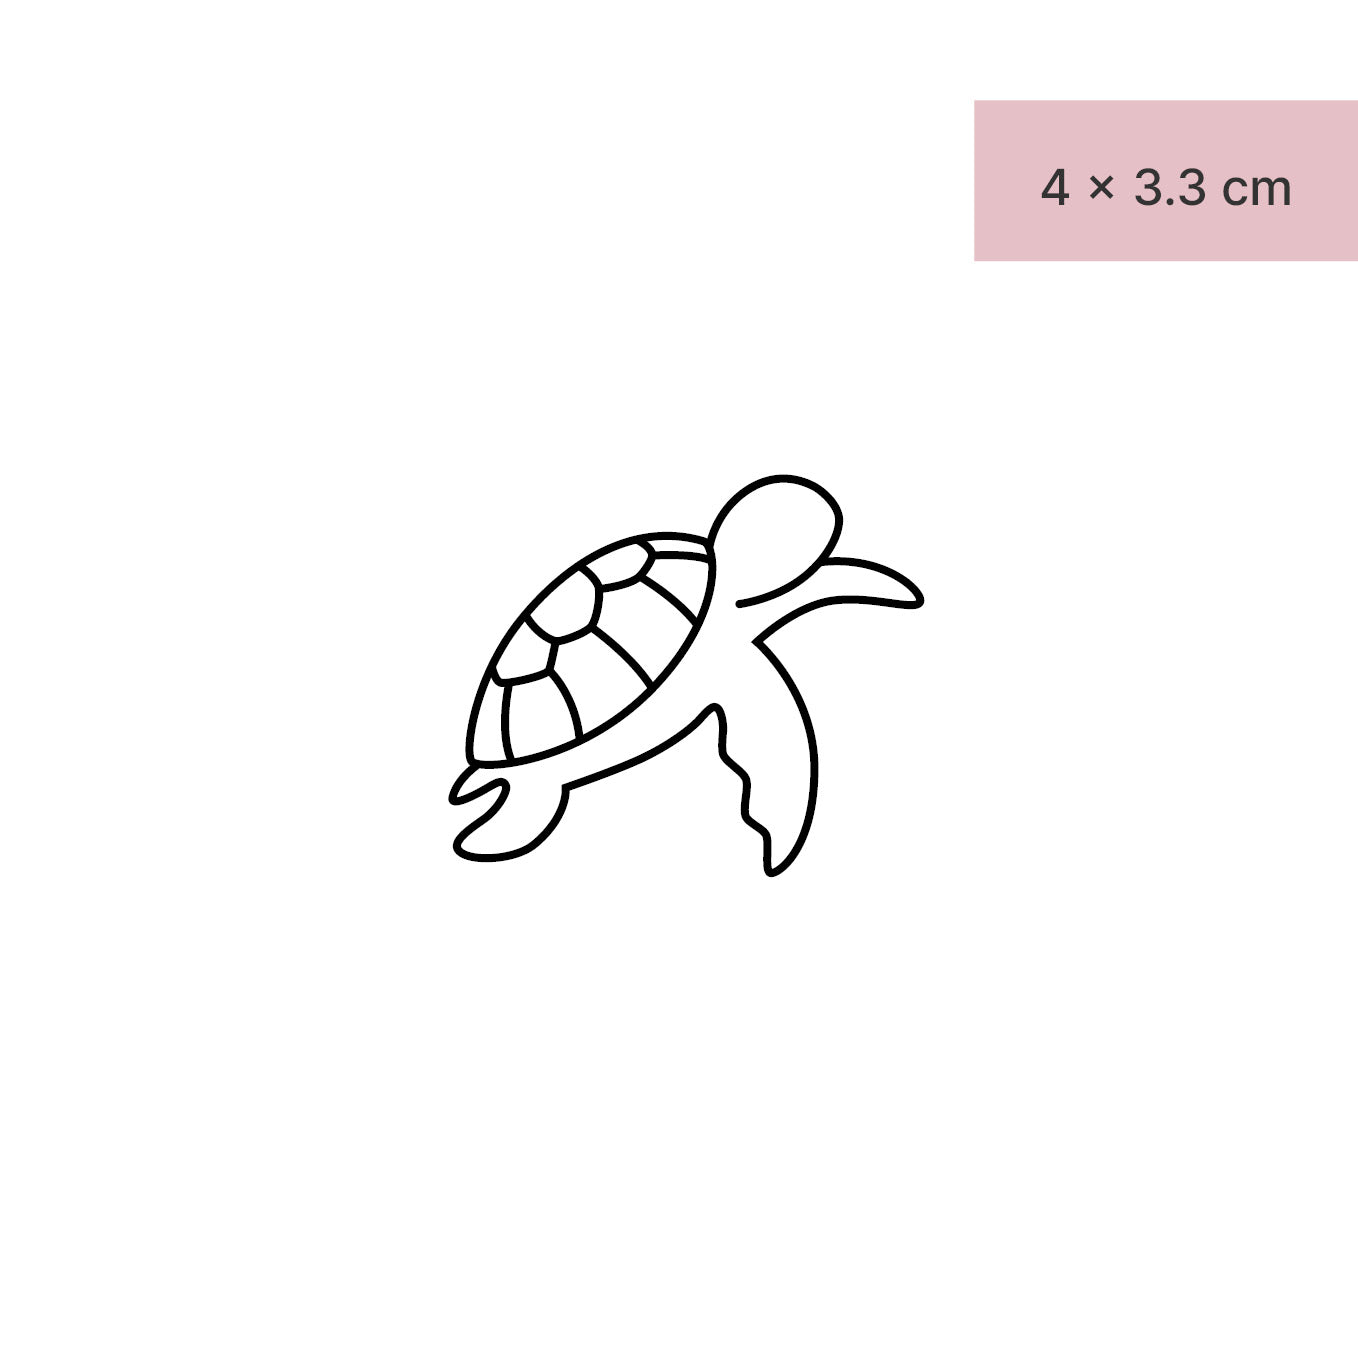 Schwimmende Schildkröte Tattoo von minink, der Marke für temporäre Tattoos.